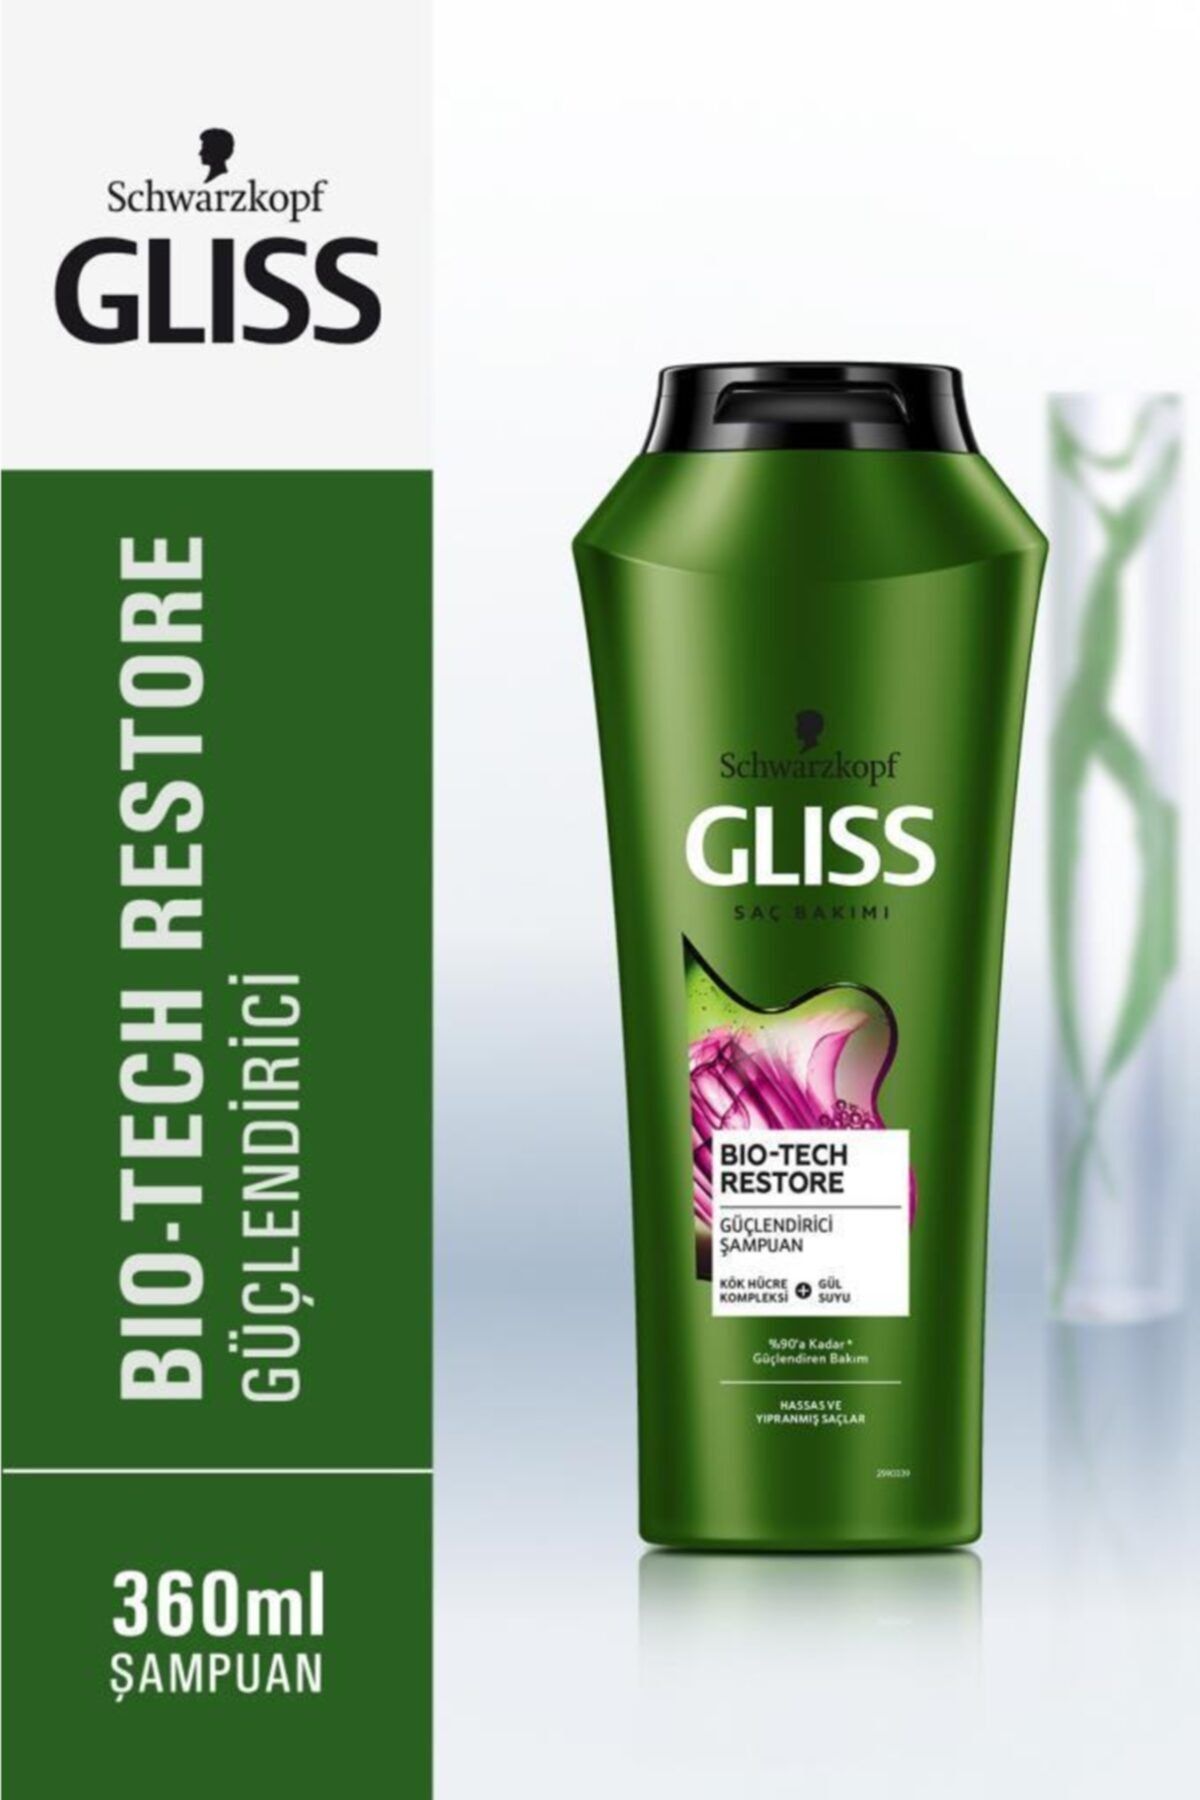 Gliss Bio-tech Restore Güçlendirici Şampuan- Kök Hücre Kompleksi Ve Gül Suyu Ile 360 ml